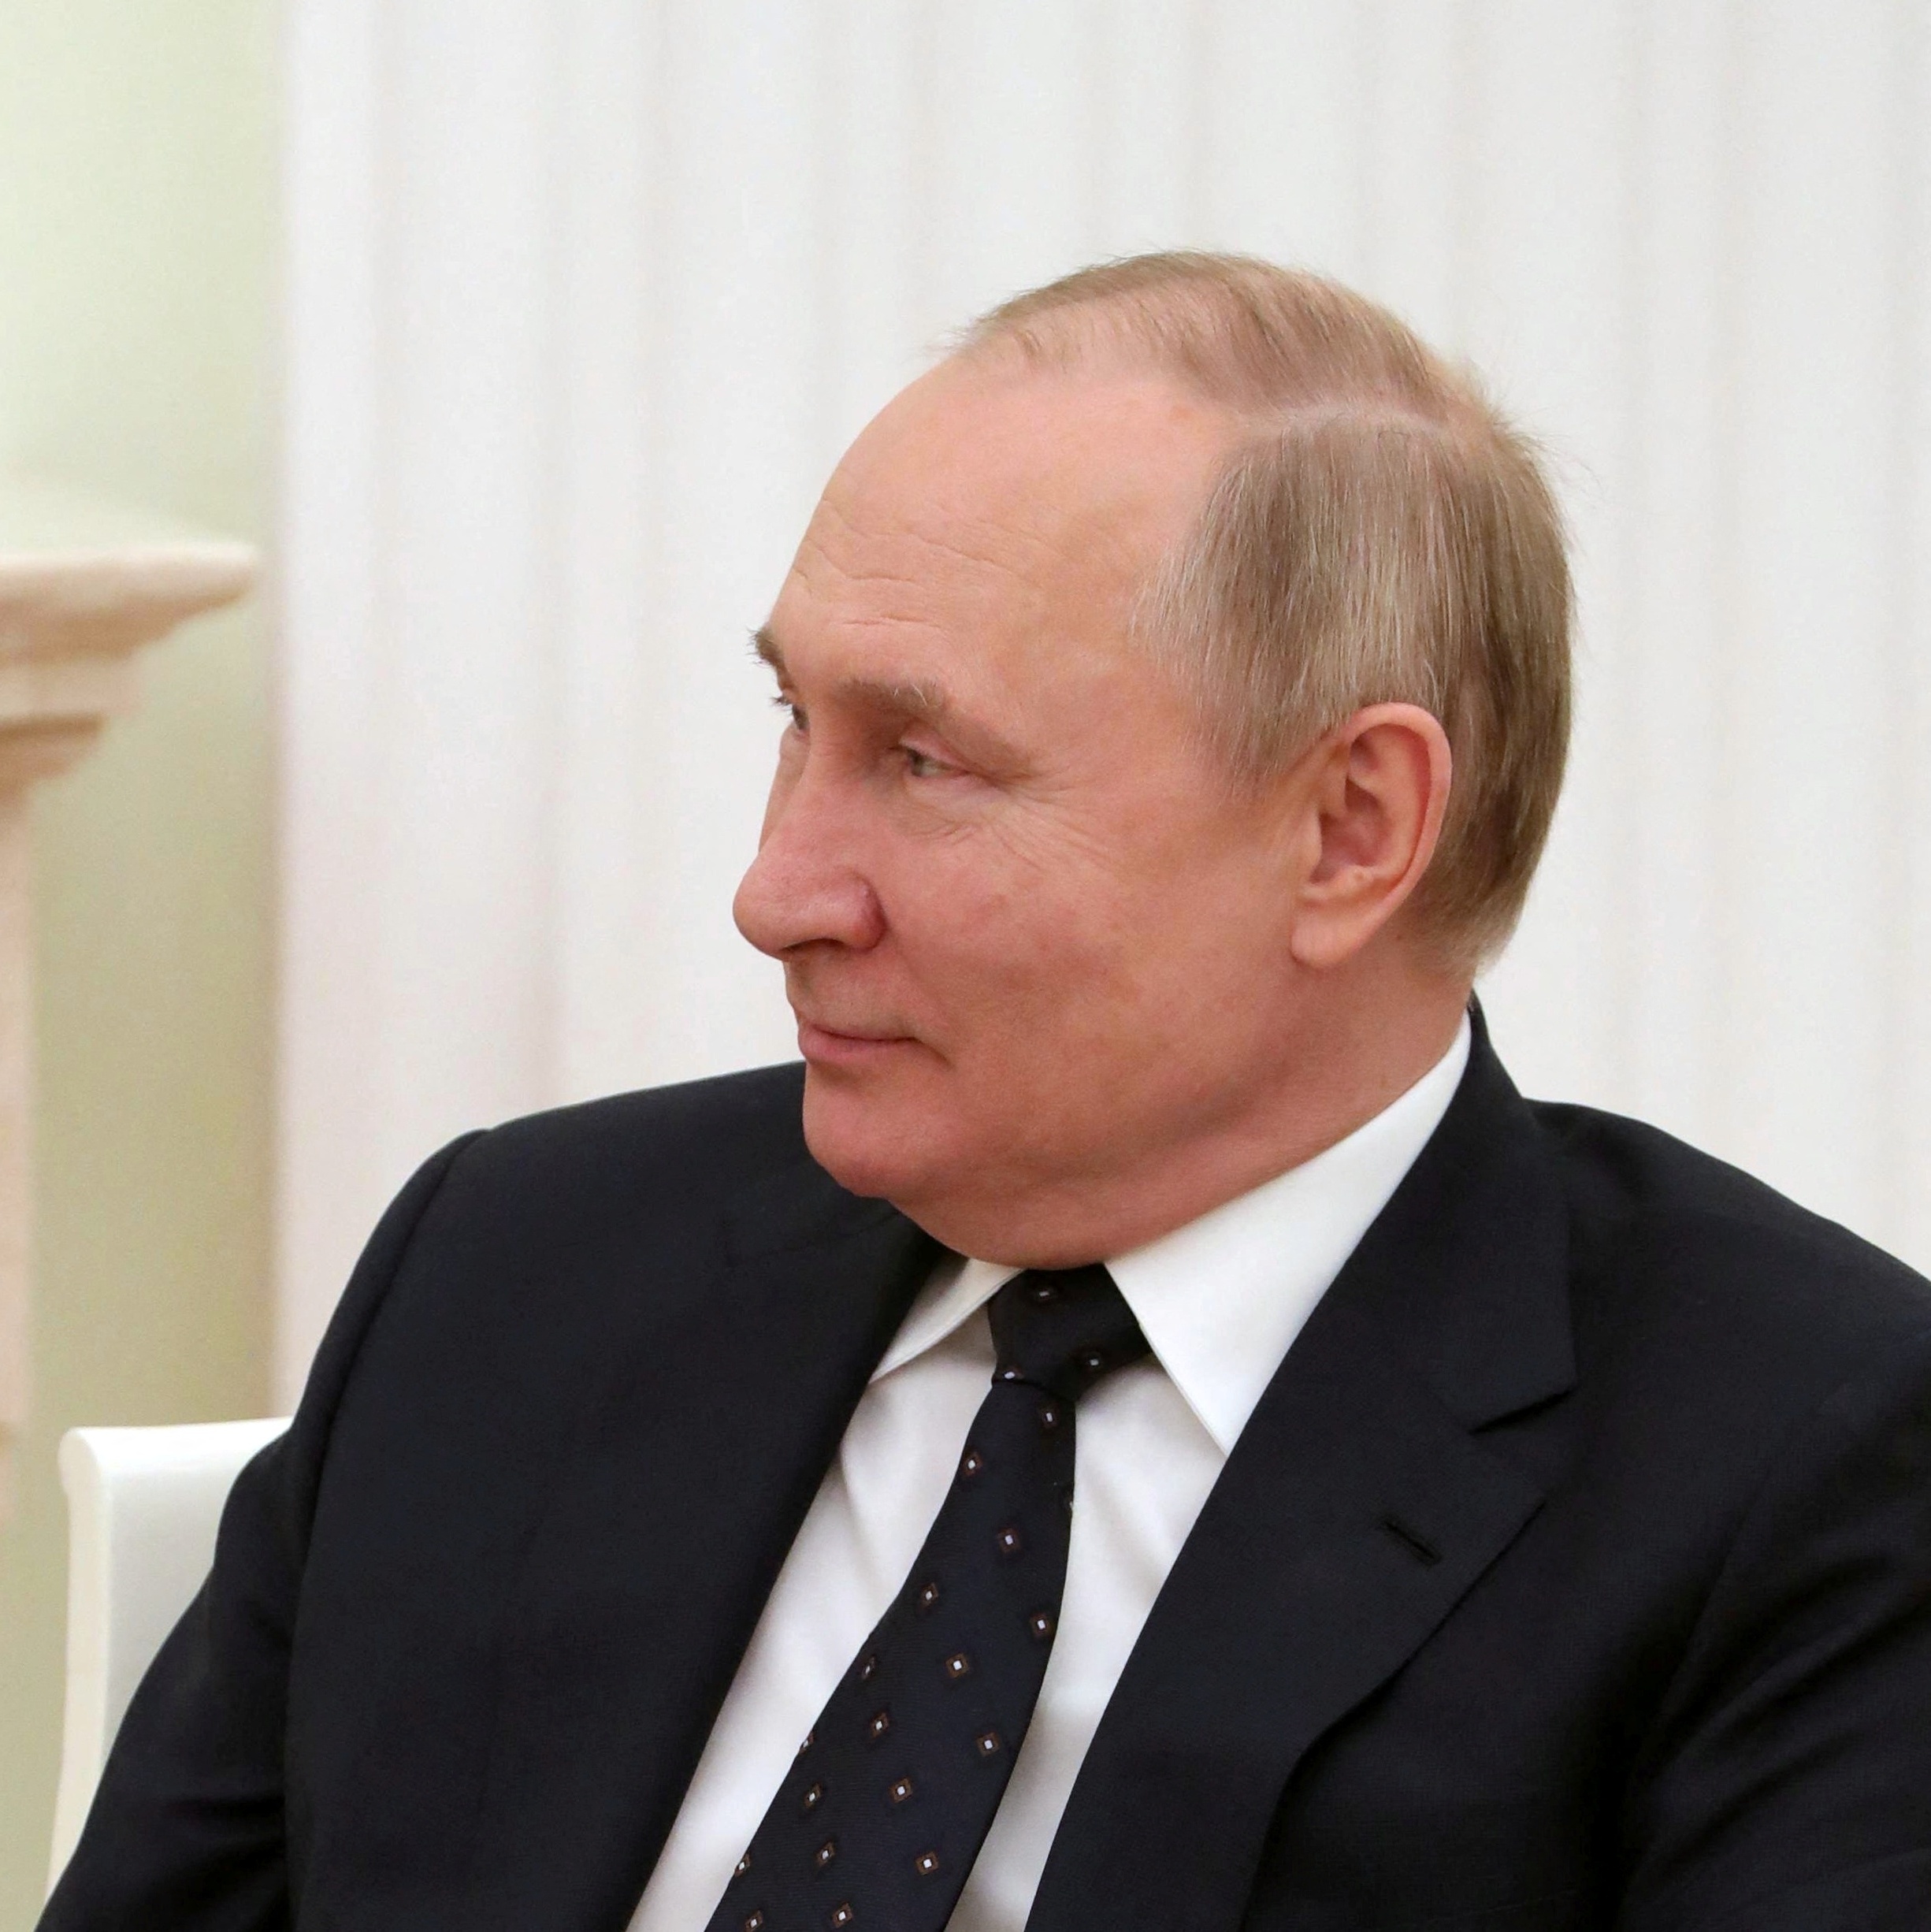 Rússia x Ucrânia: Putin tem perfil destacado em revistas francesas